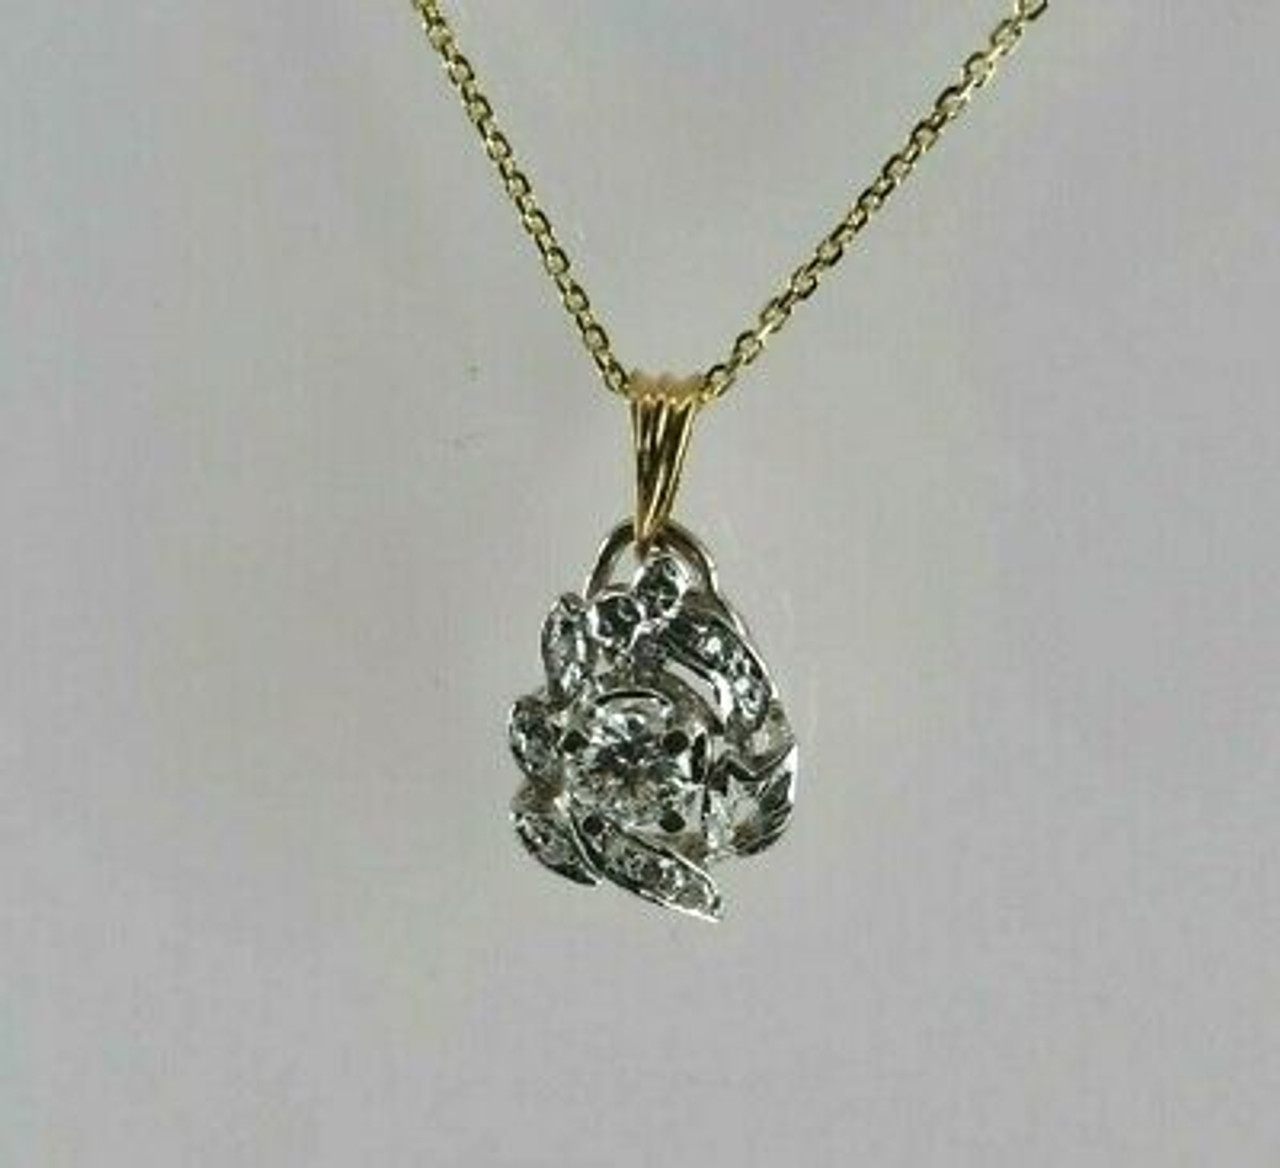 Authentic! Cartier Double C 18K White Gold Diamond Pendant Necklace